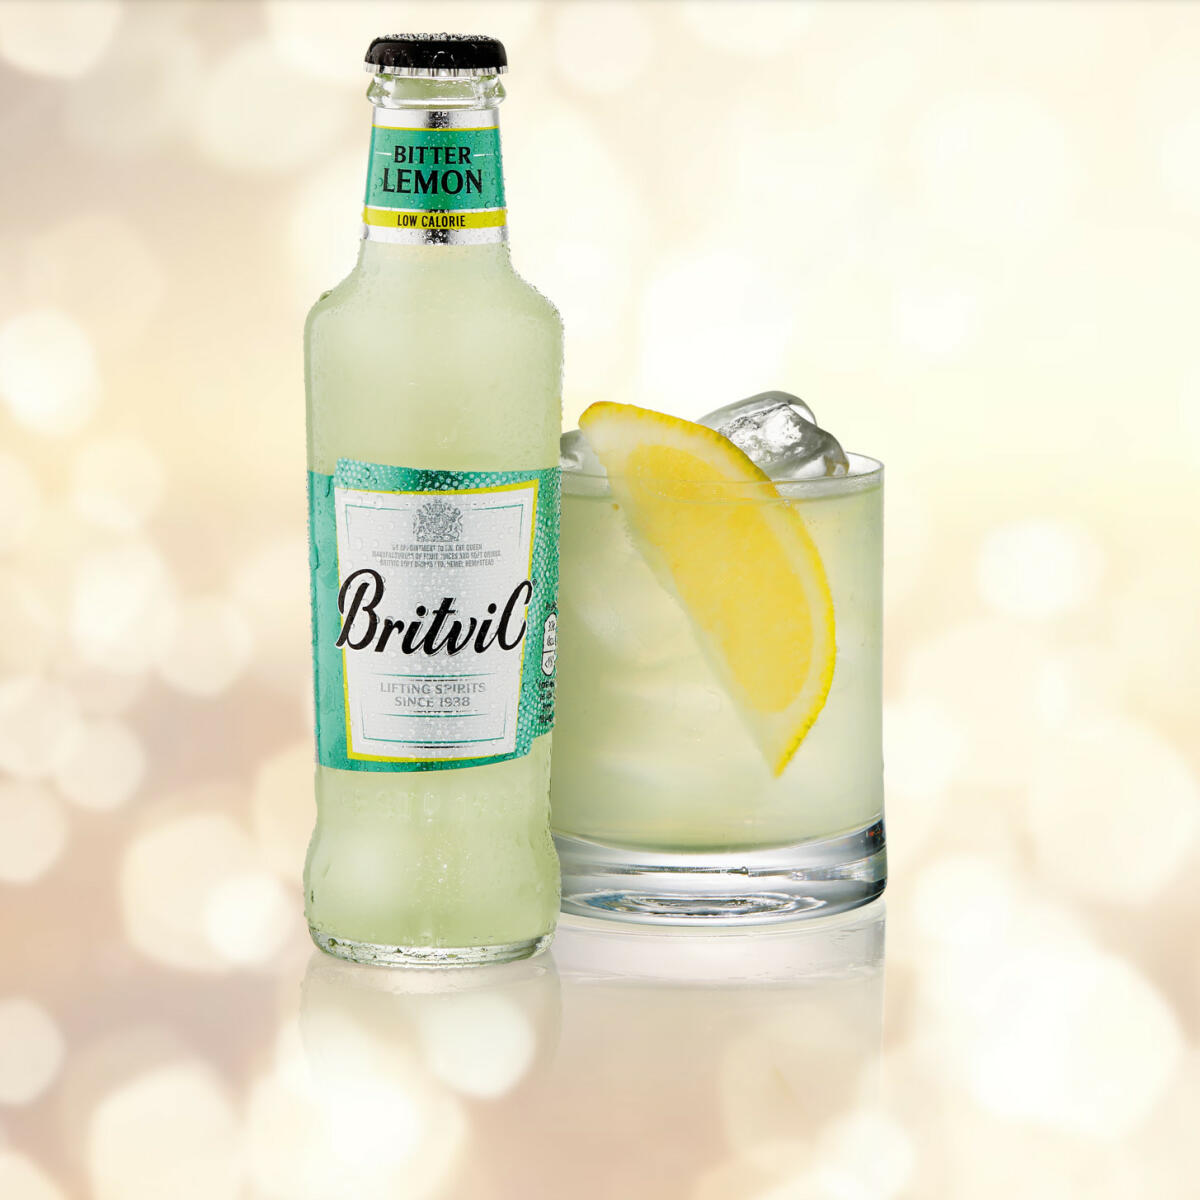 Discover the refreshing taste of Gin & Lemon with Britvic Bitter Lemon!